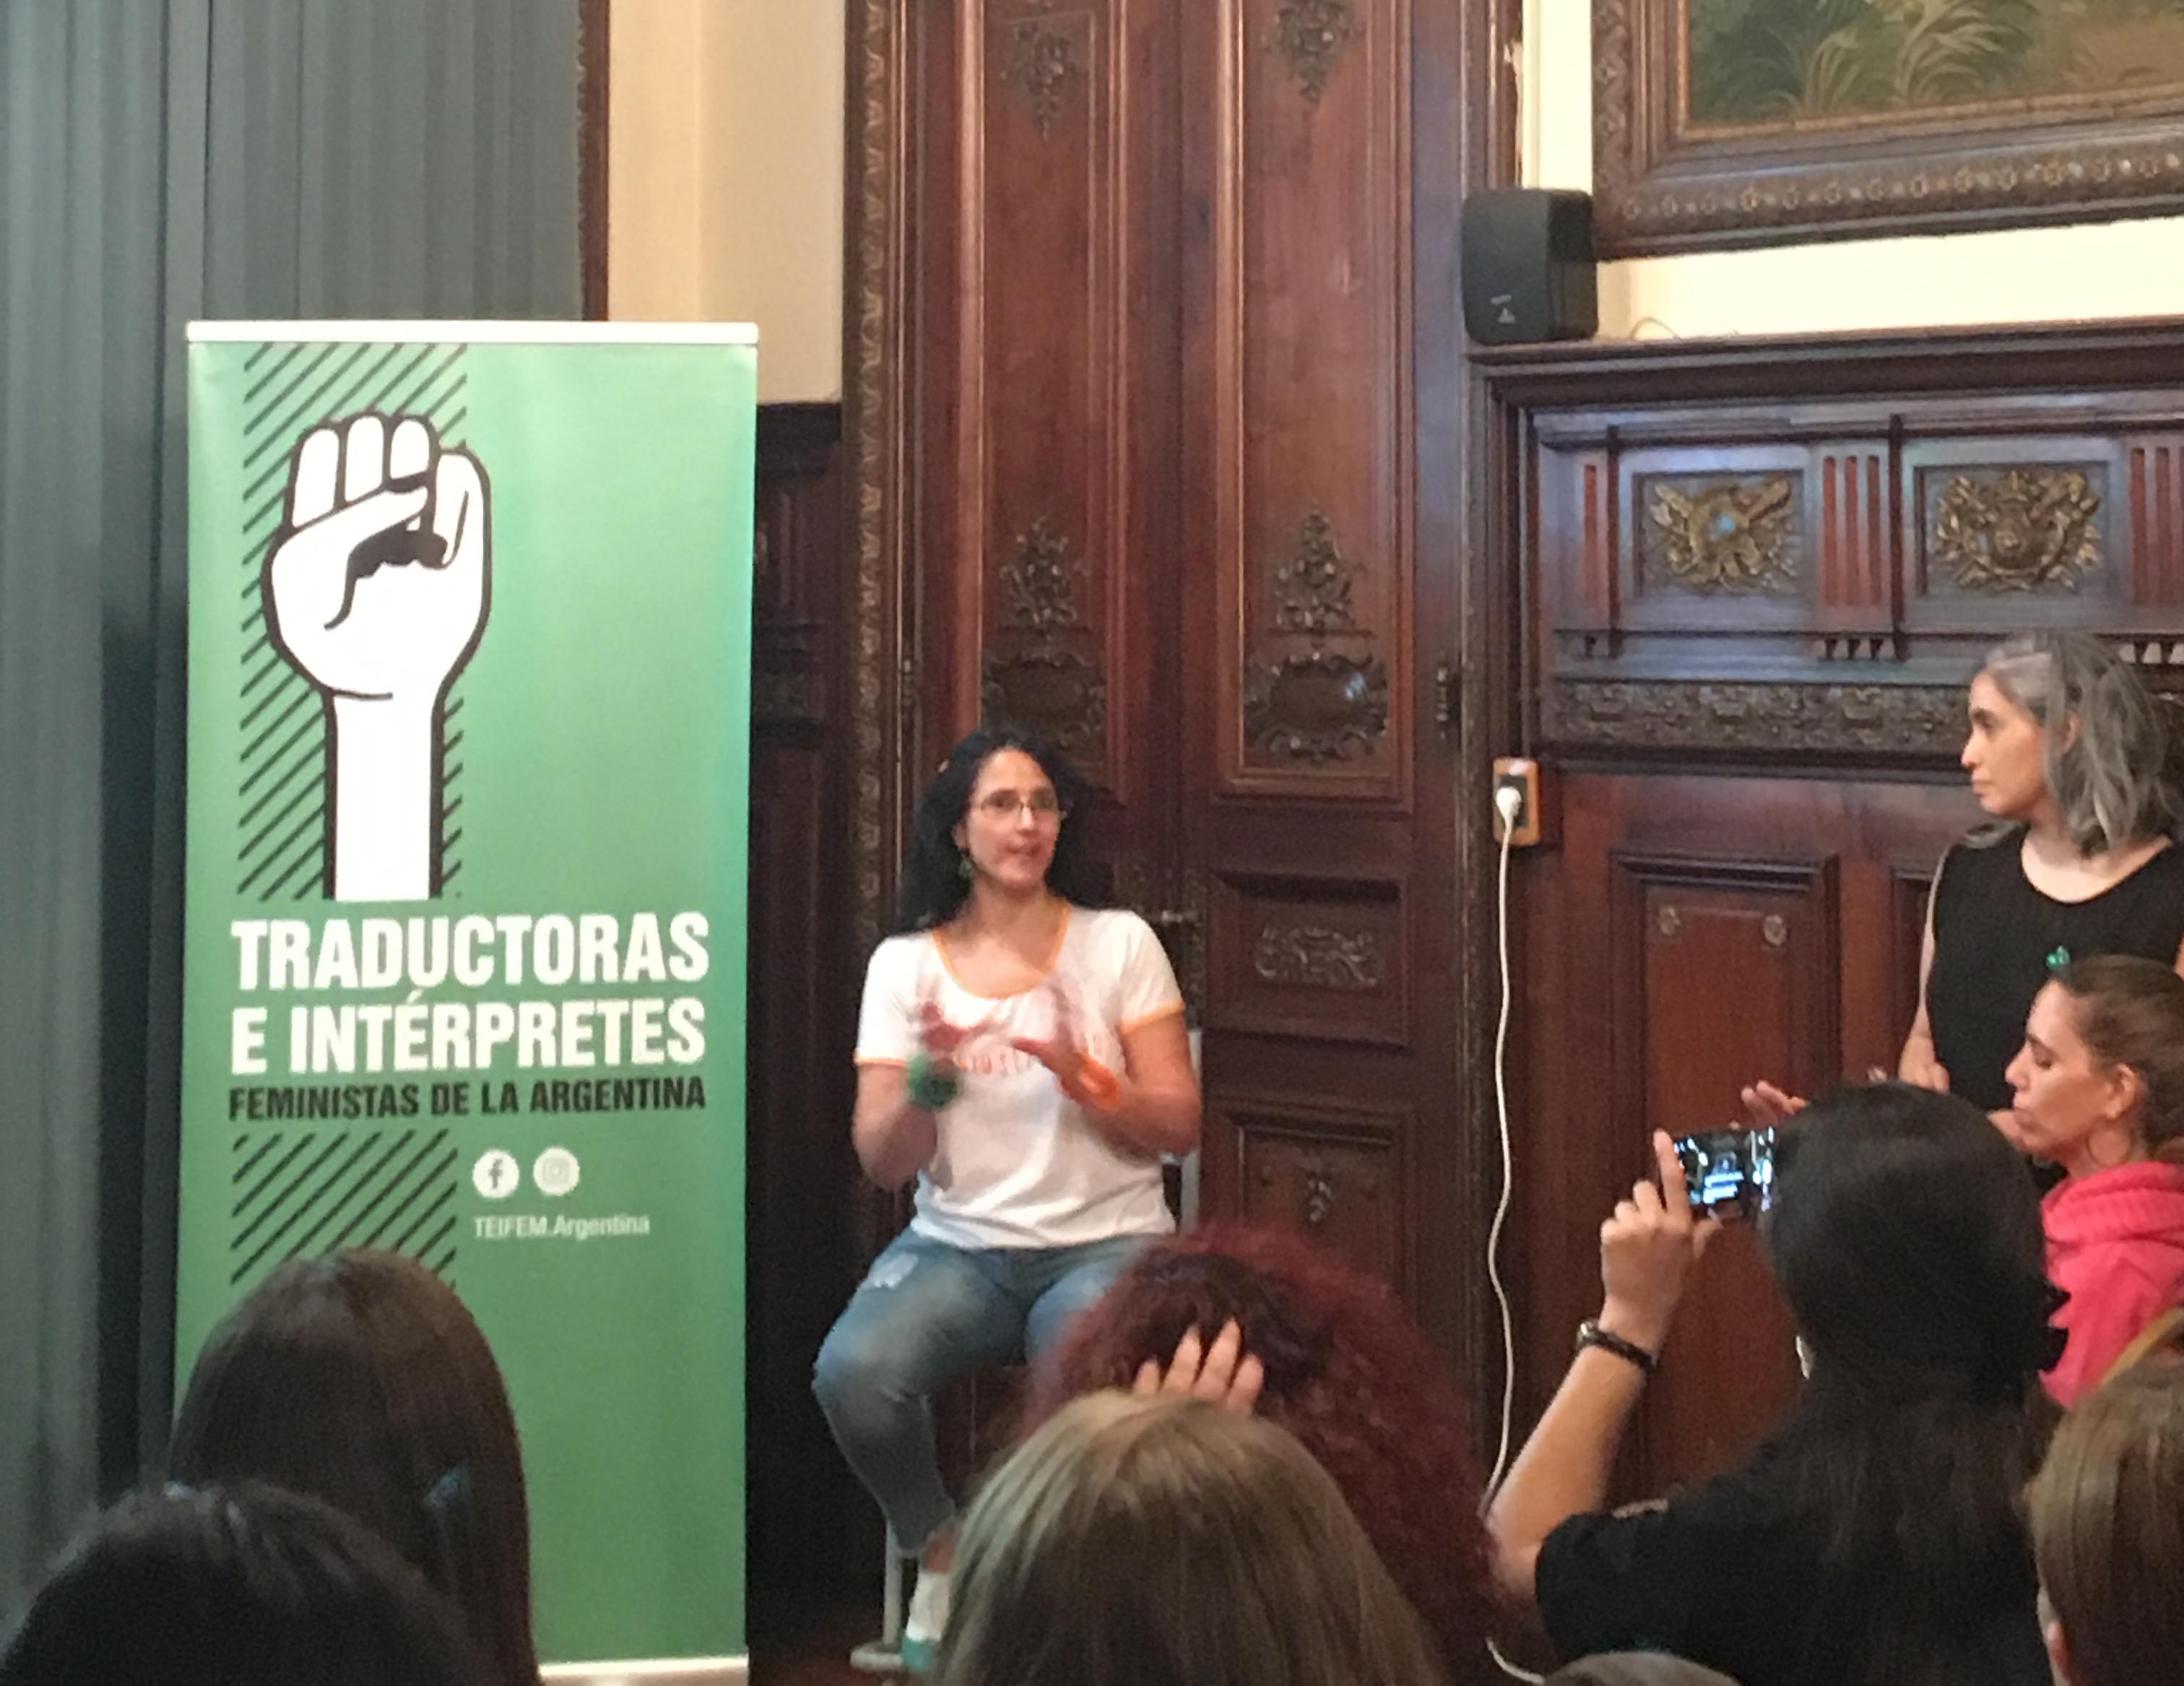 La fotografía muestra a Erika Cosenza sentada en un taburete alto al lado de un banner vertical que, sobre fondo verde, dice «Traductoras e Intérpretes Feministas de la Argentina»